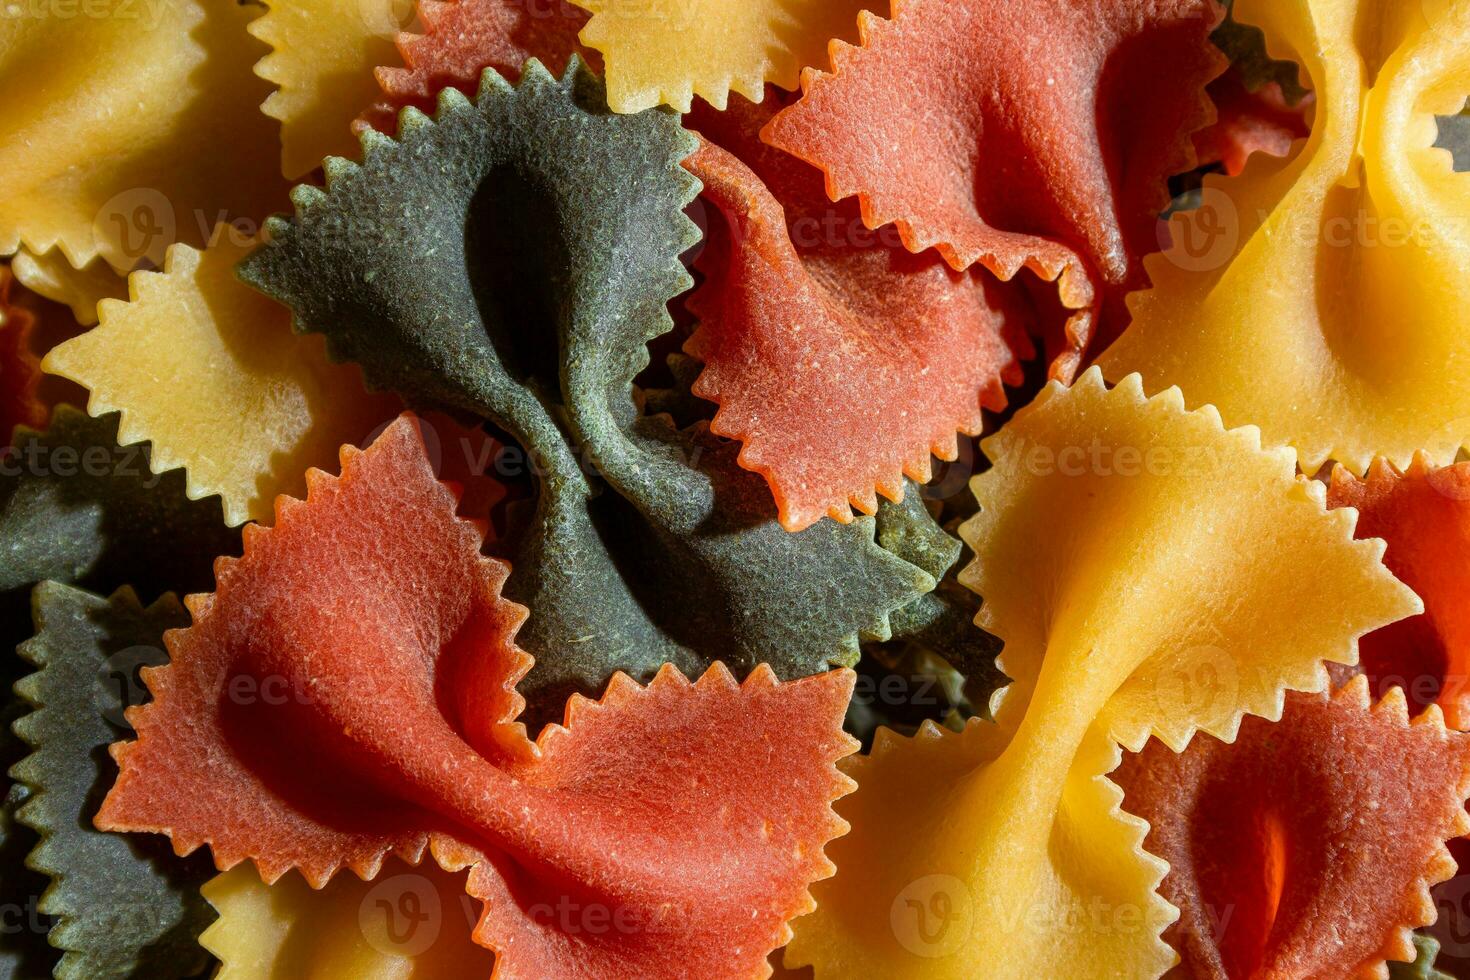 ungekocht beschwingt farbig farfalle Pasta. ein kulinarisch Segeltuch von mehrfarbig Krawatte Makkaroni, Erstellen ein lebhaft und texturiert Hintergrund zum Gourmet Kochen Enthusiasten. farbig trocken Pasta. roh Makkaroni foto